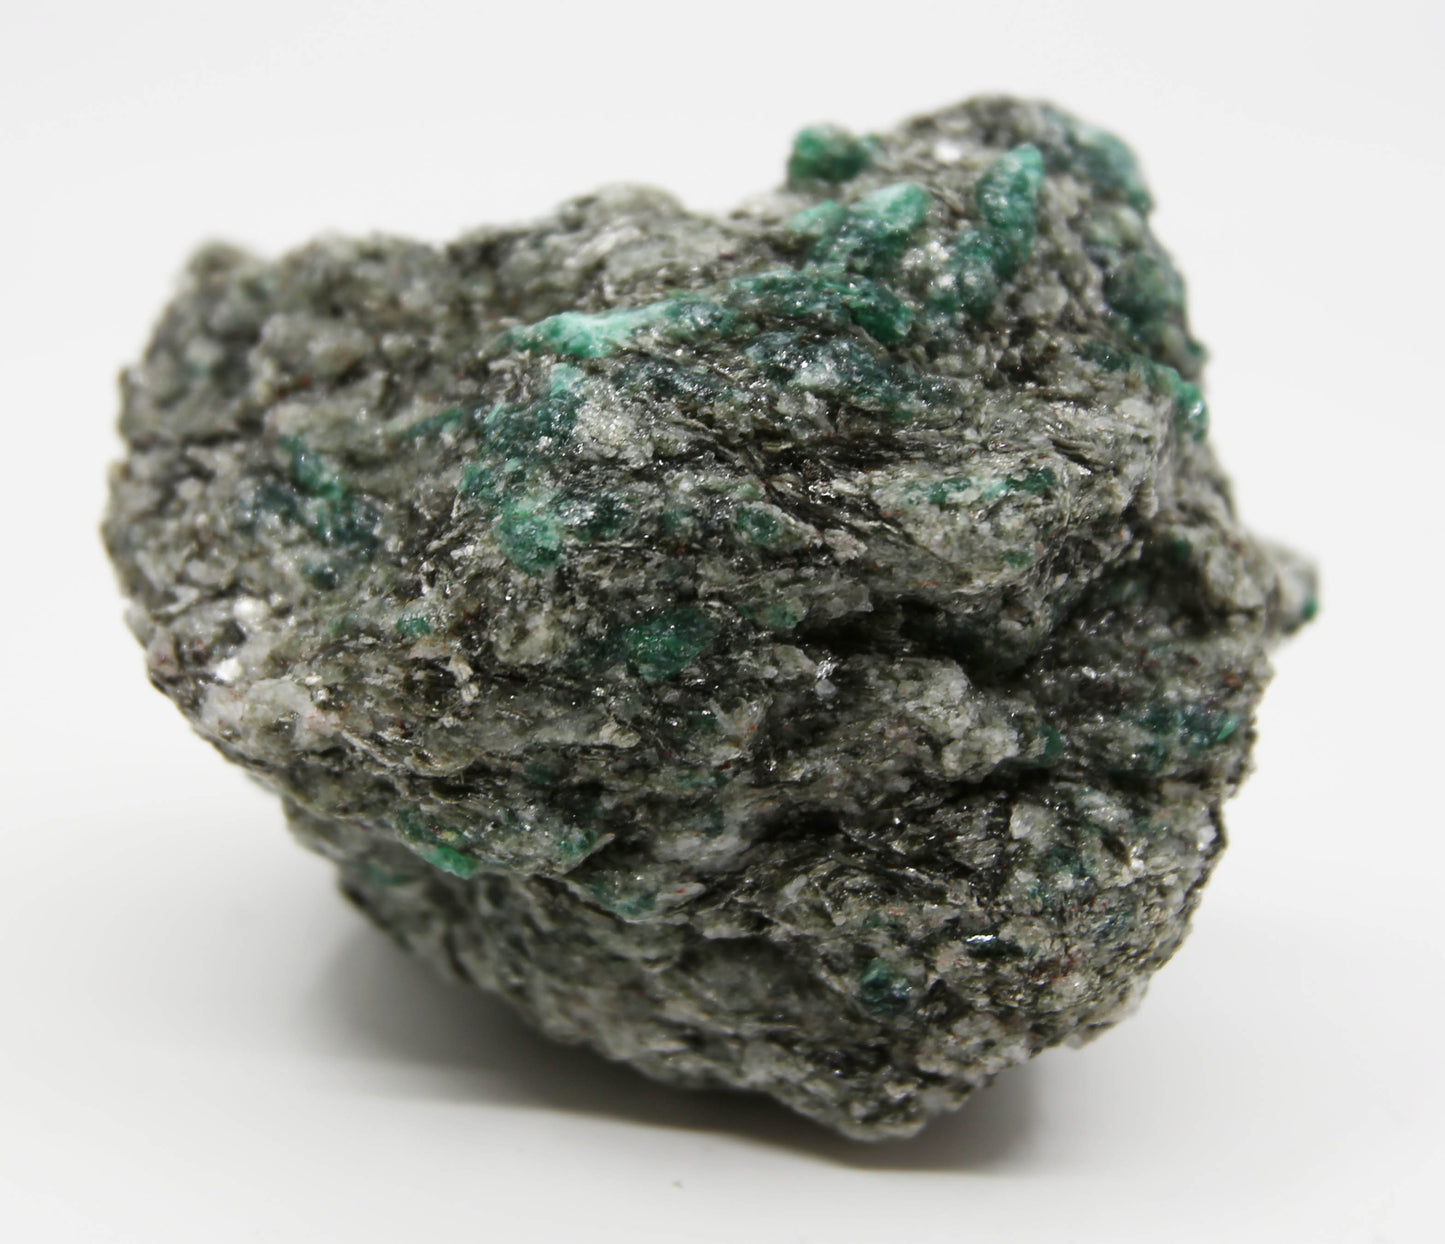 Natural emerald in a matrix of quartz and mica.